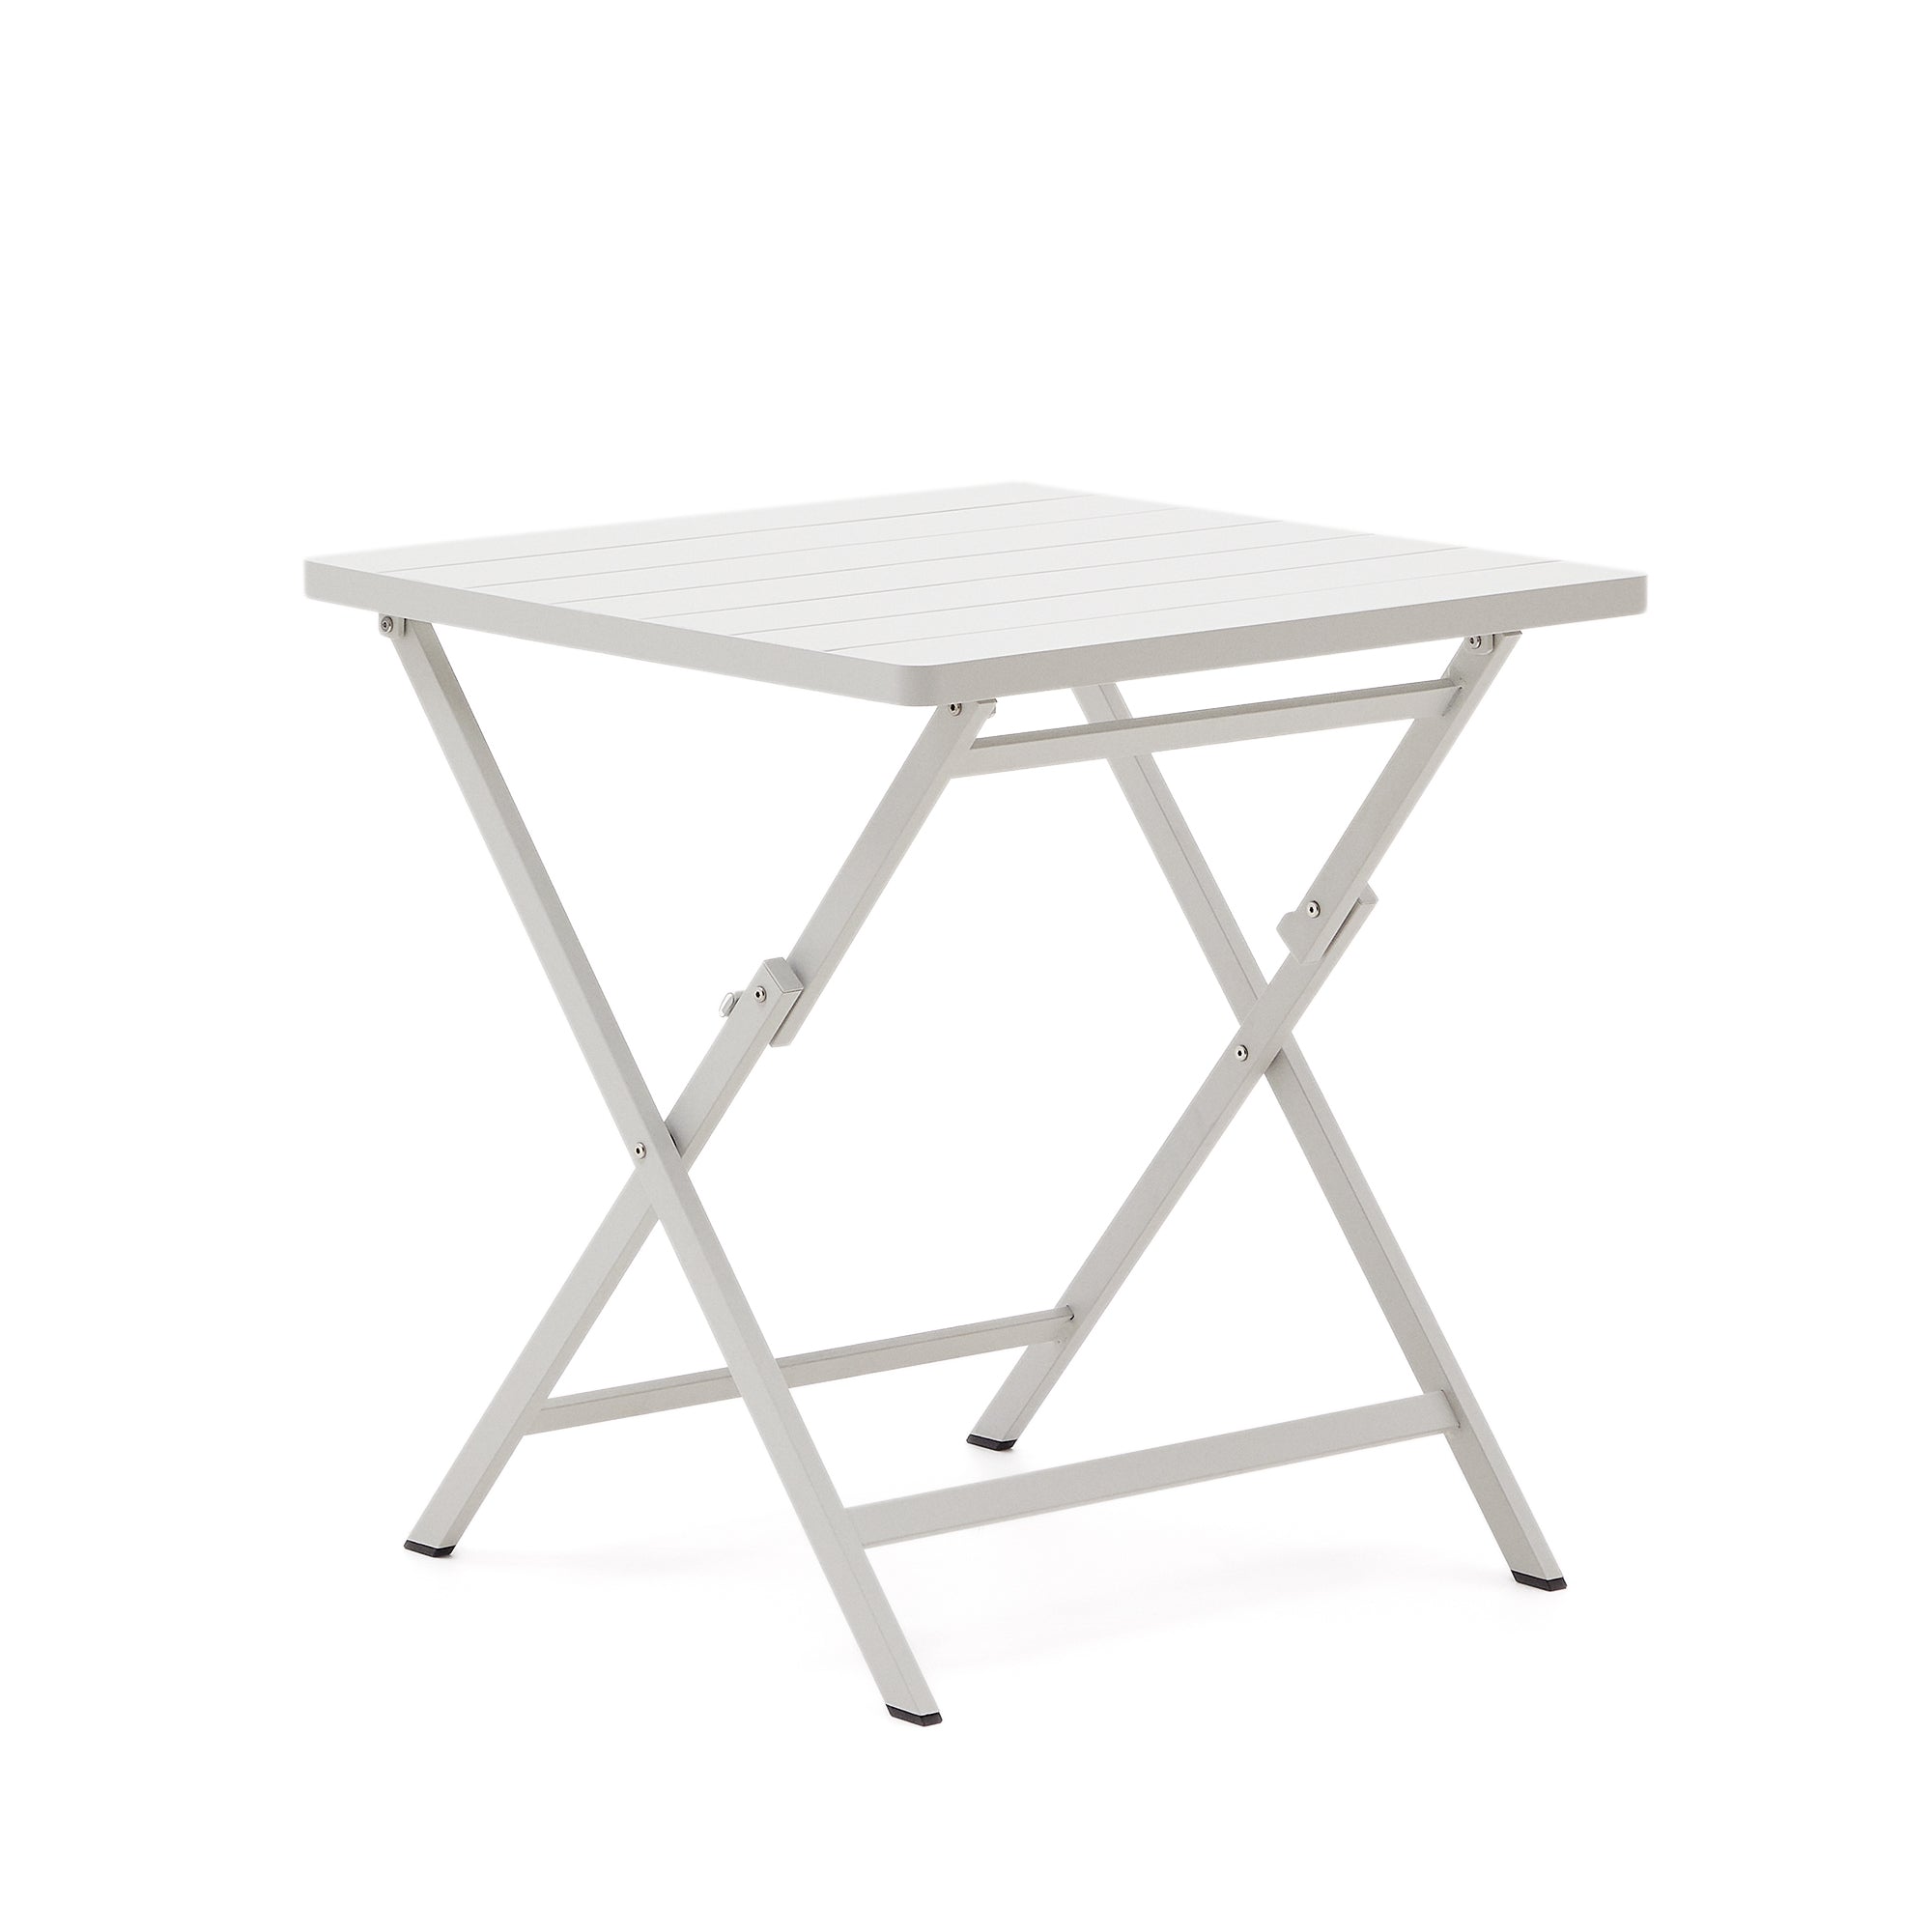 Torreta összecsukható kültéri asztal alumíniumból, fehér bevonattal 70 x 70 cm